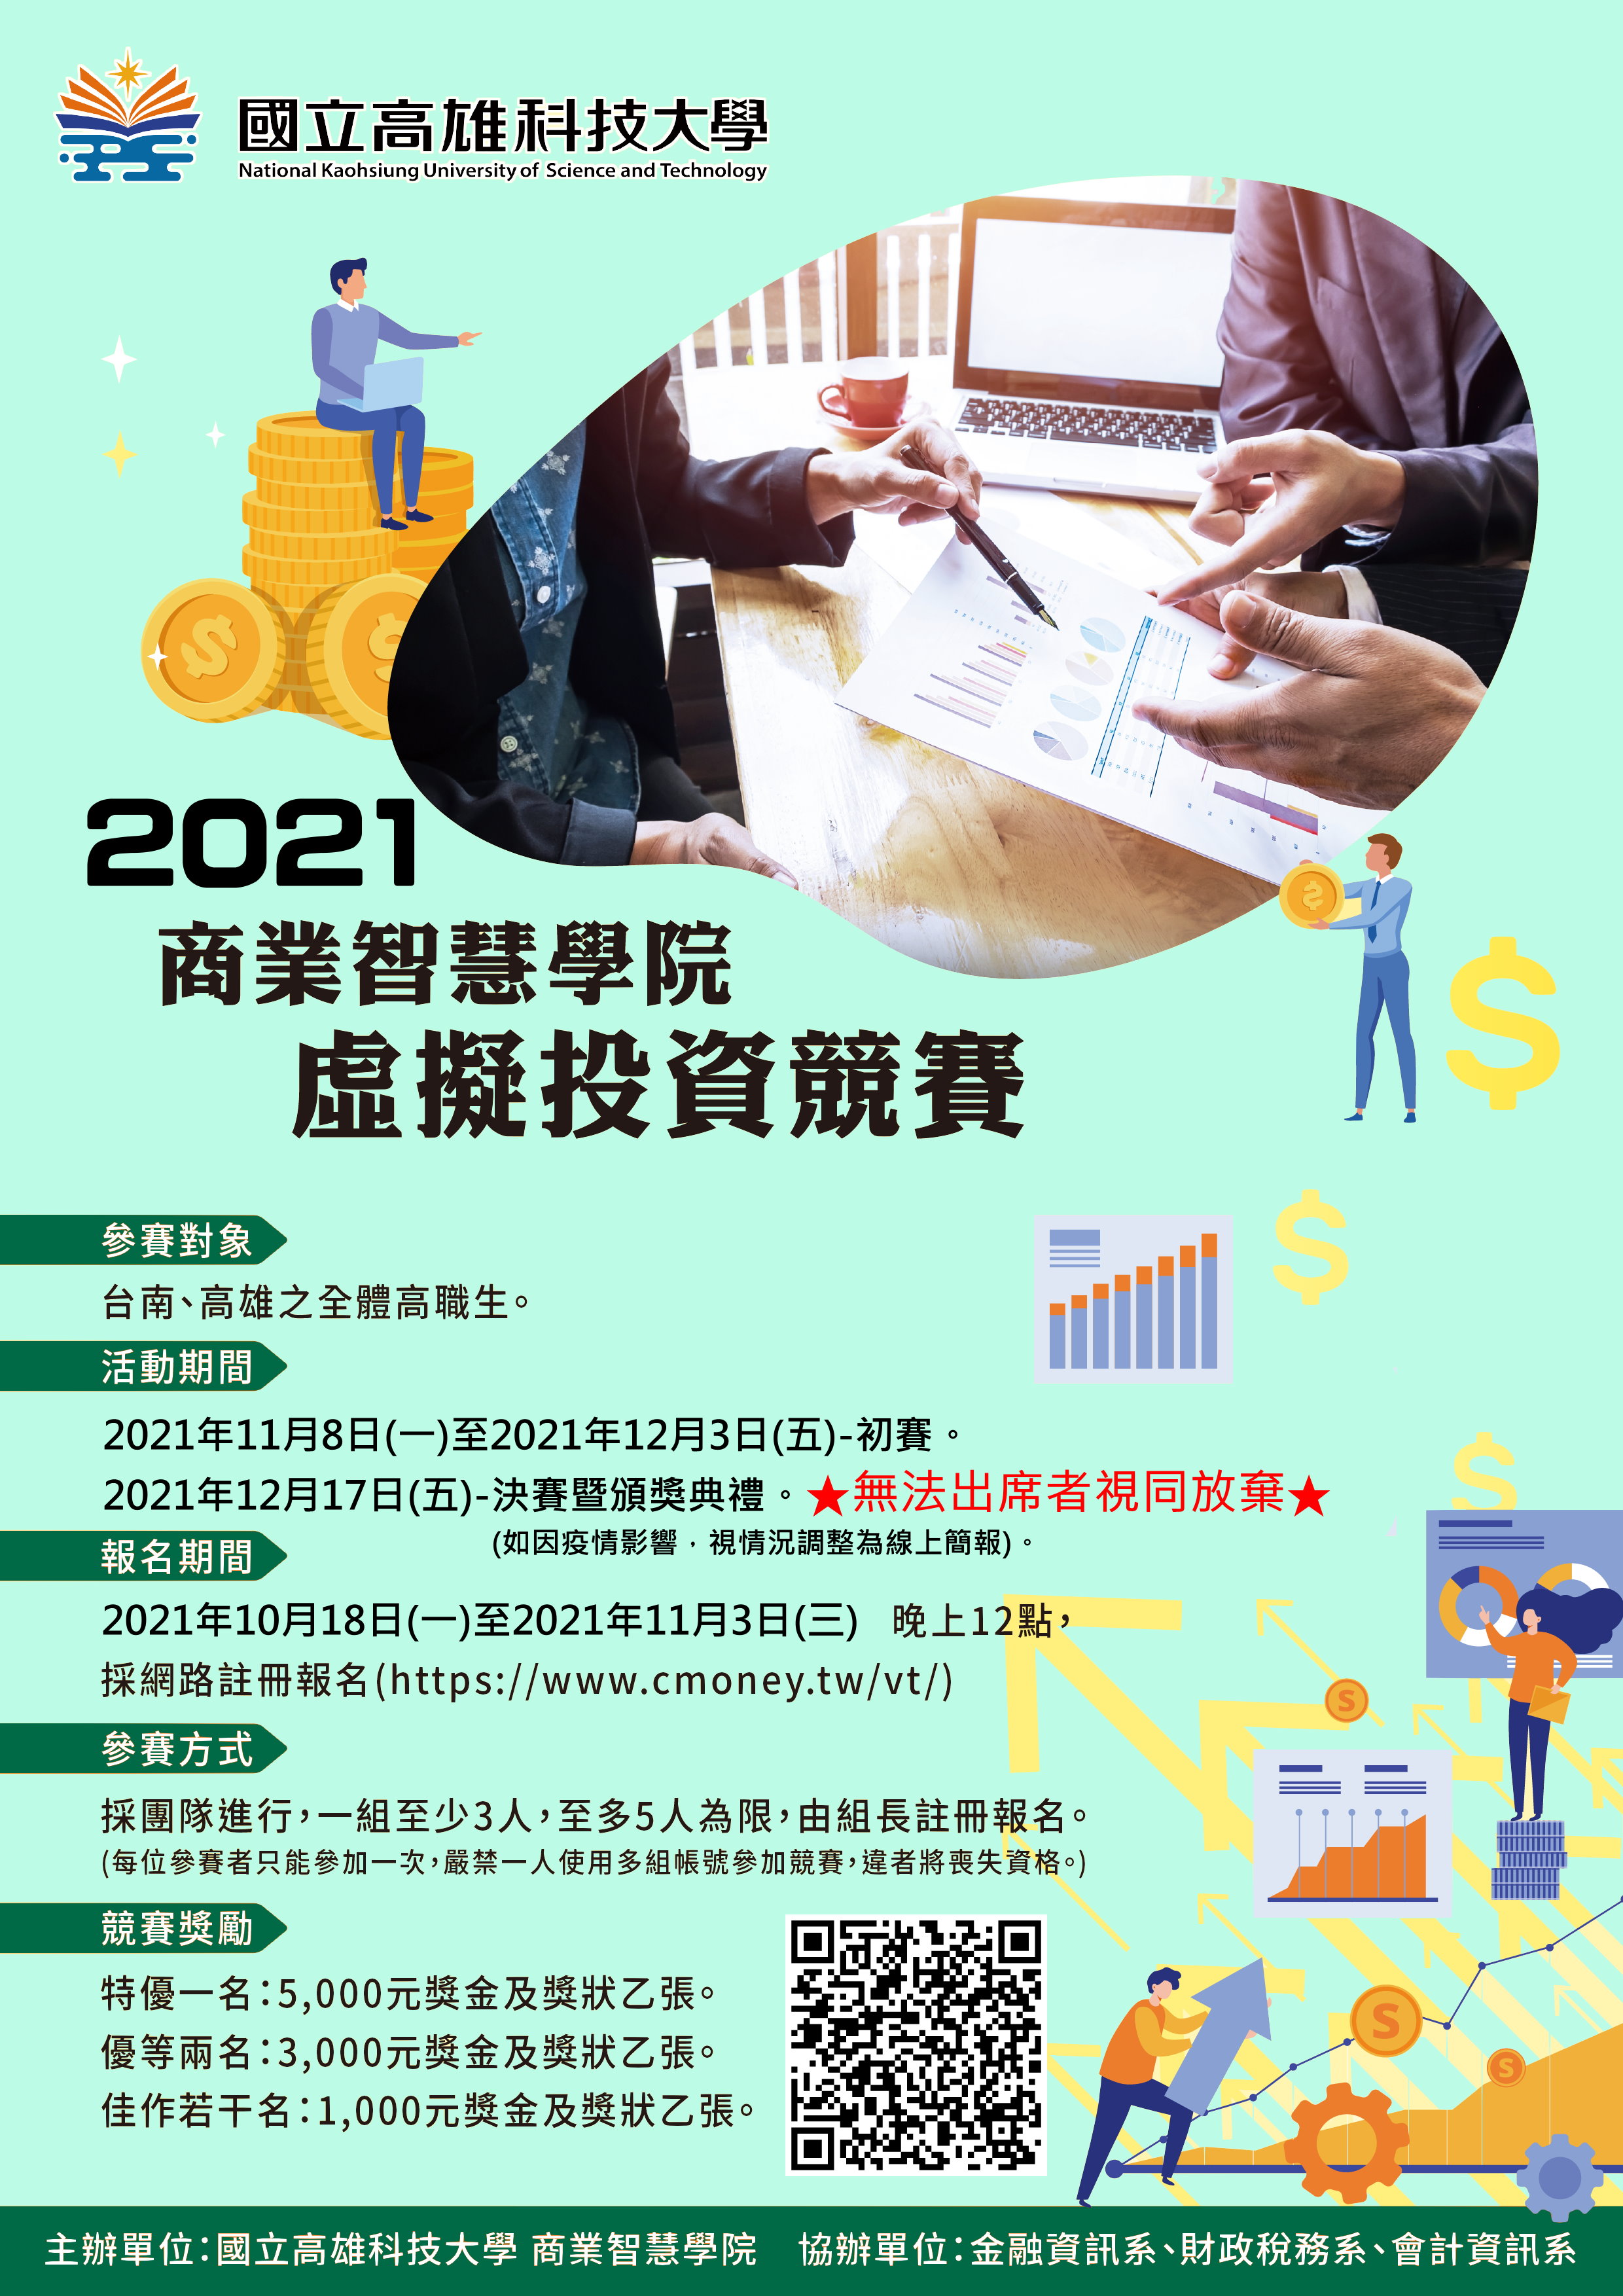 海報-「2021商業智慧學院虛擬投資競賽」_ATT1.jpg (1.09 MB)